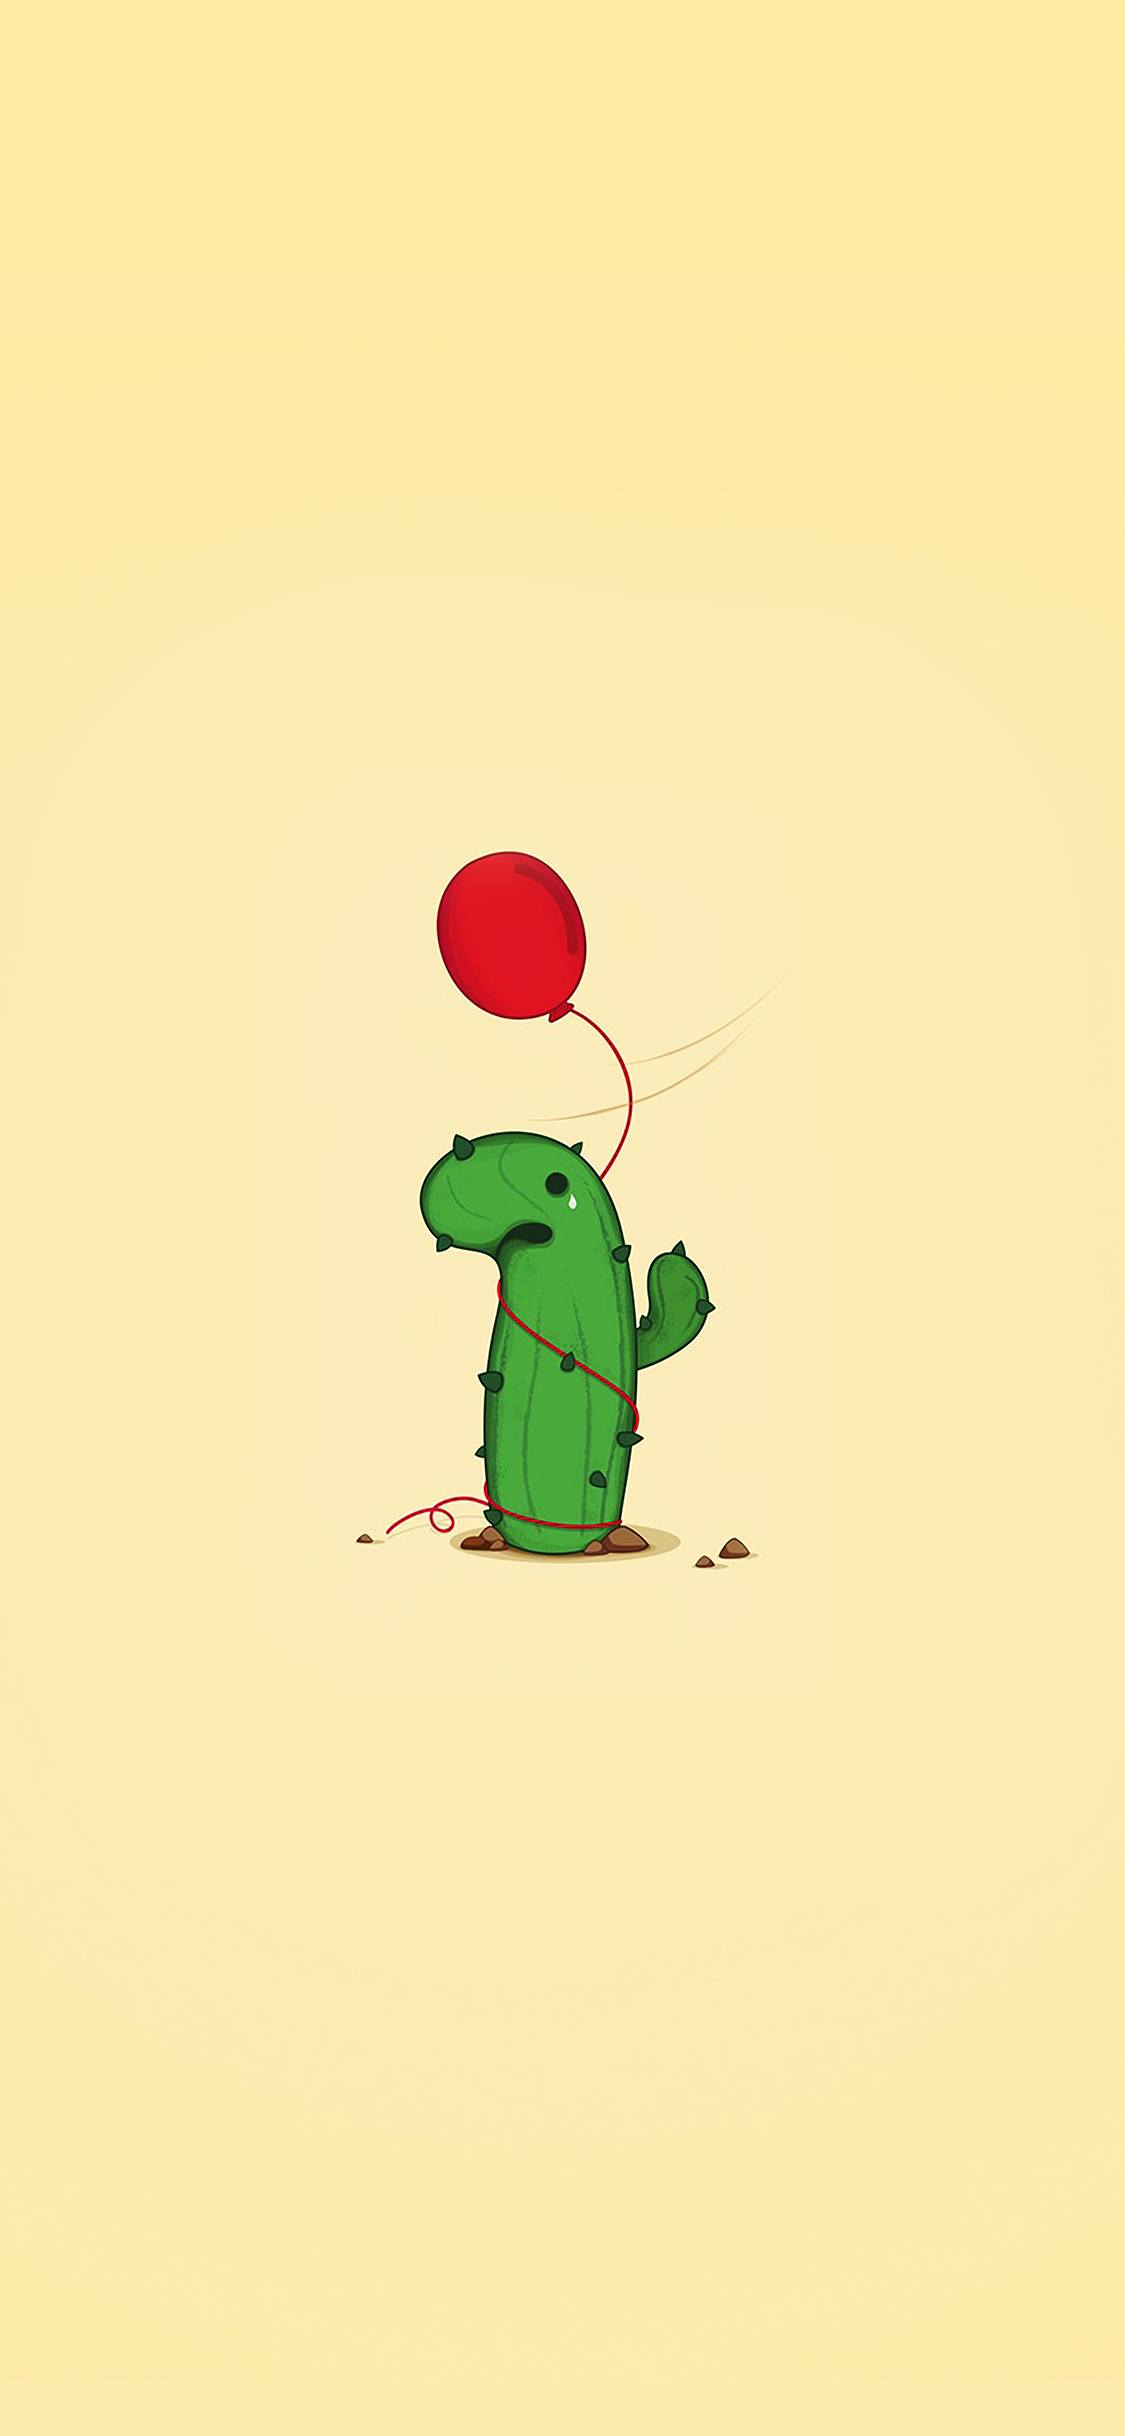 Cute Cactus Ballon Illust Art Minimal